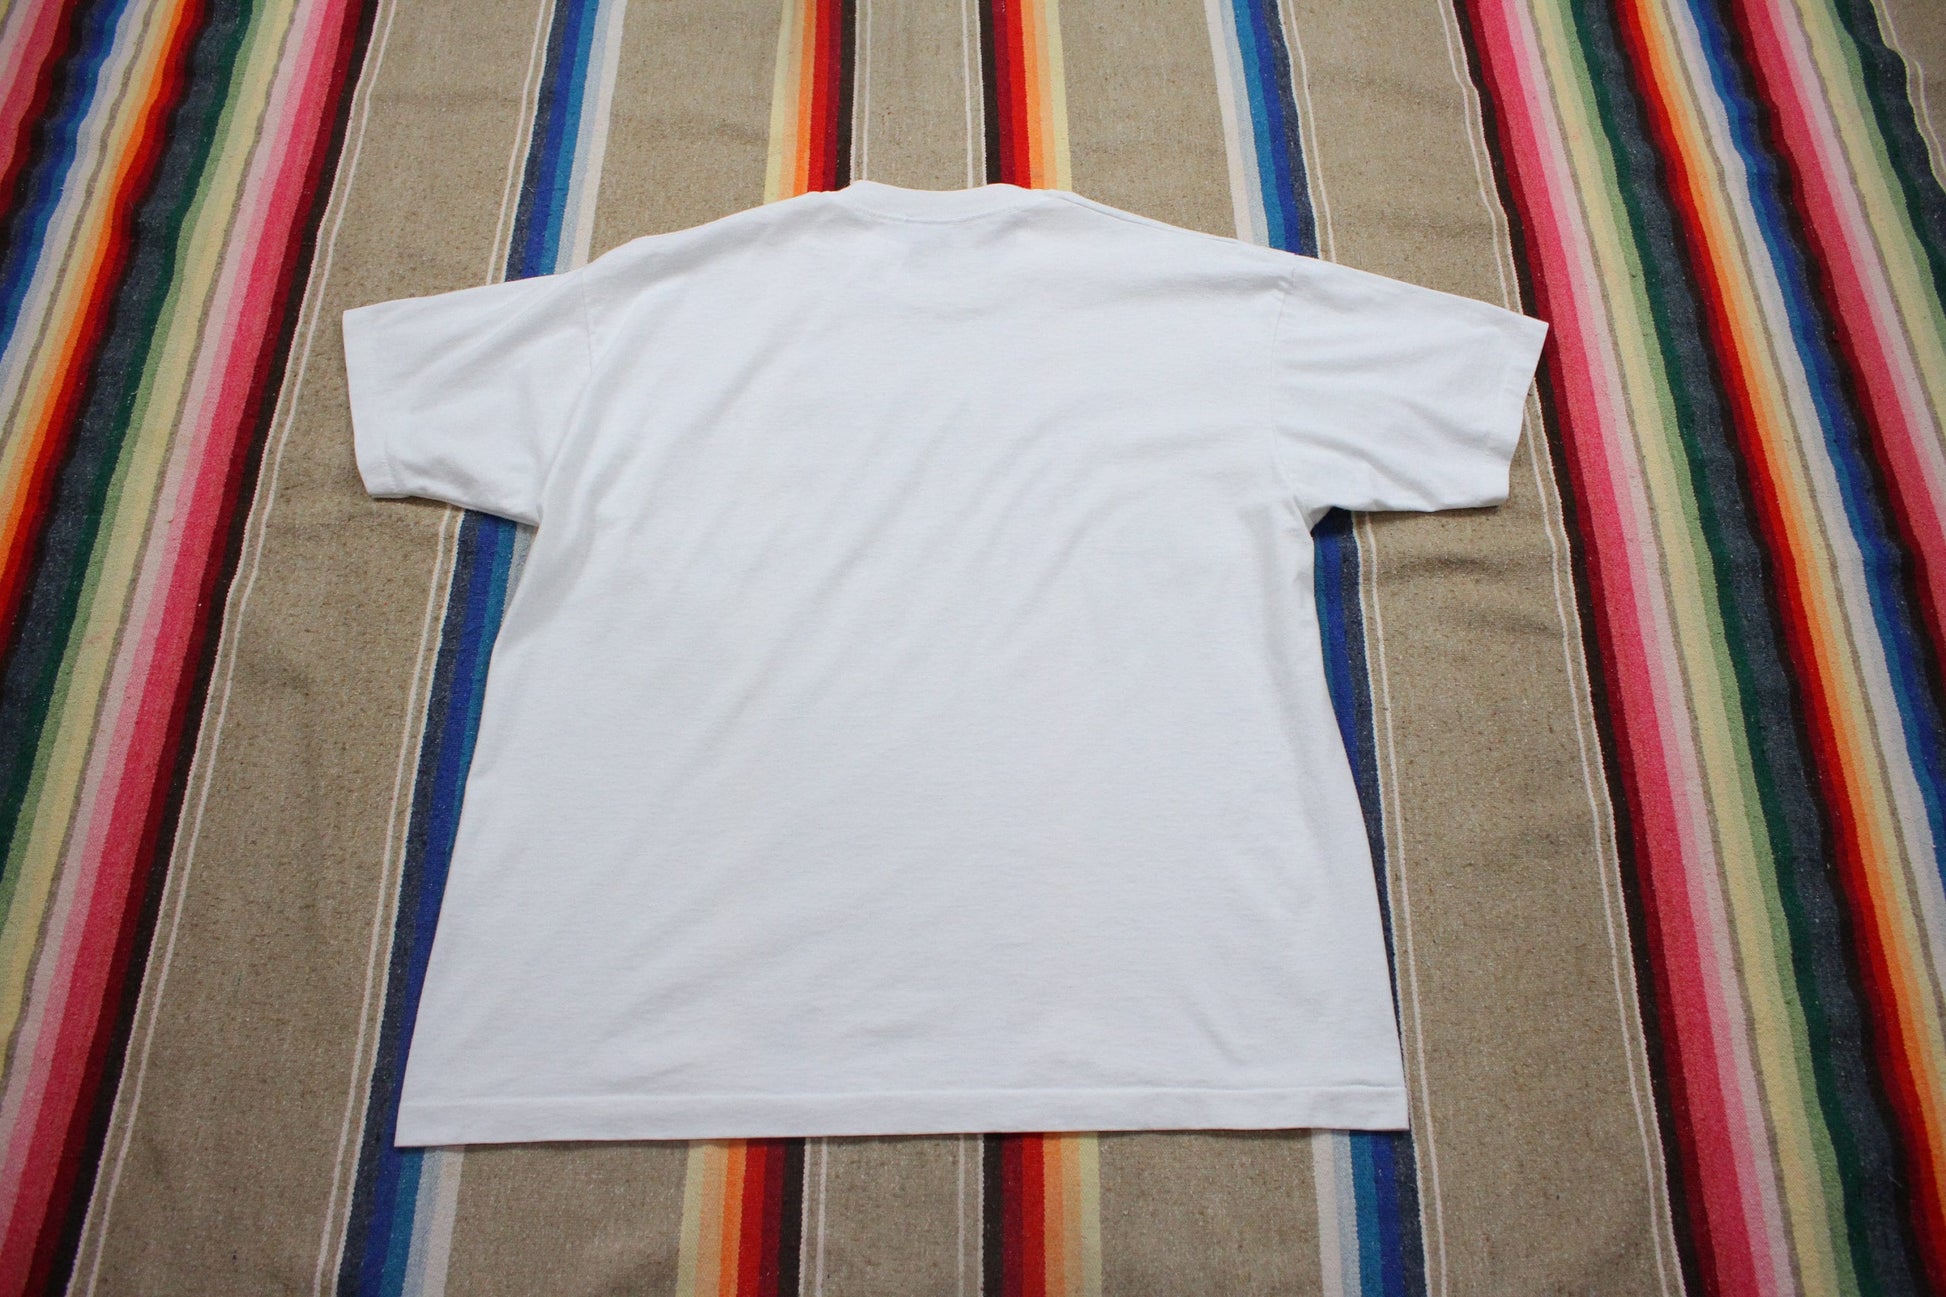 1990s Cuba Winter Picnic Souvenir Novelty T-Shirt Made in Canada T-Shirt Size XL